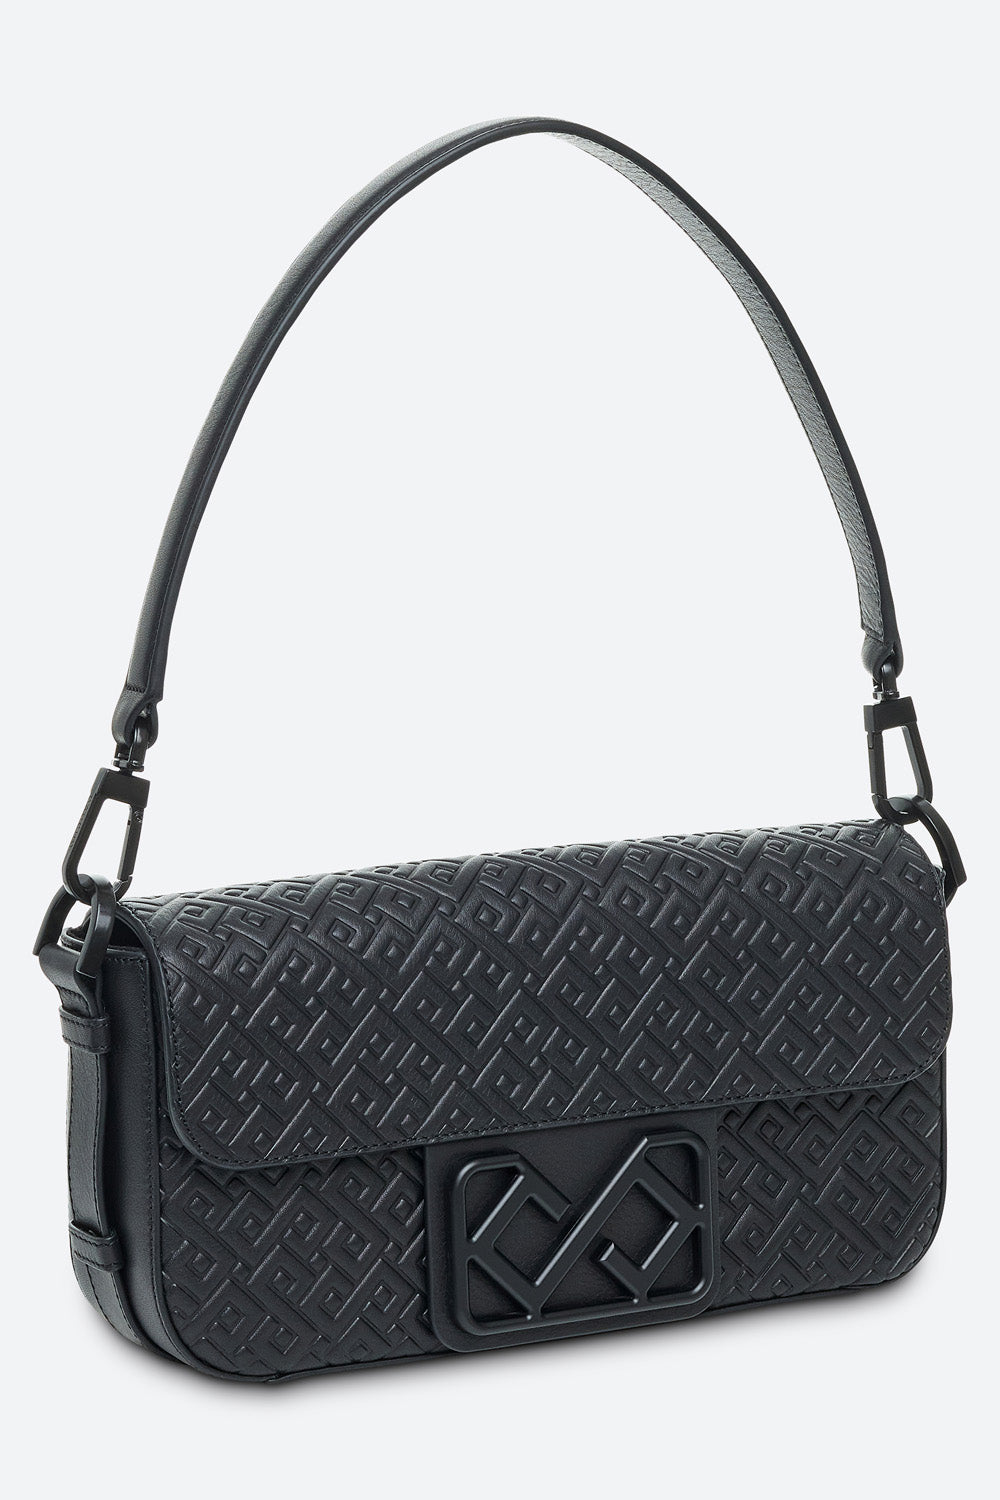 Malvina Baguette Handbag in Black, with Matte Black Hardware